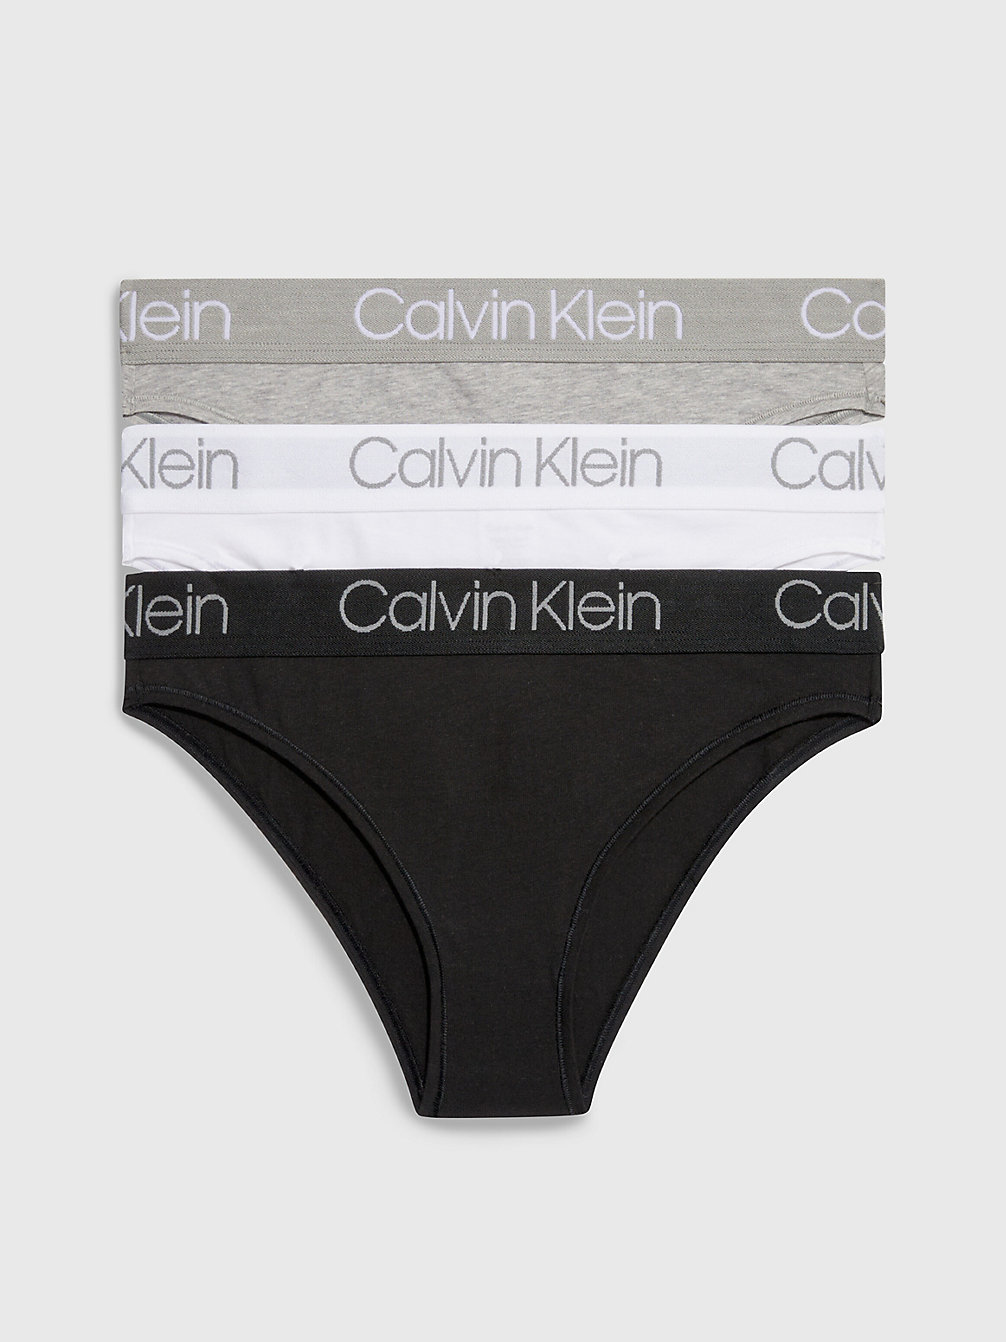 BLACK/WHITE/GREY HEATHER 3er-Pack Tanga-Slips - Body undefined Damen Calvin Klein